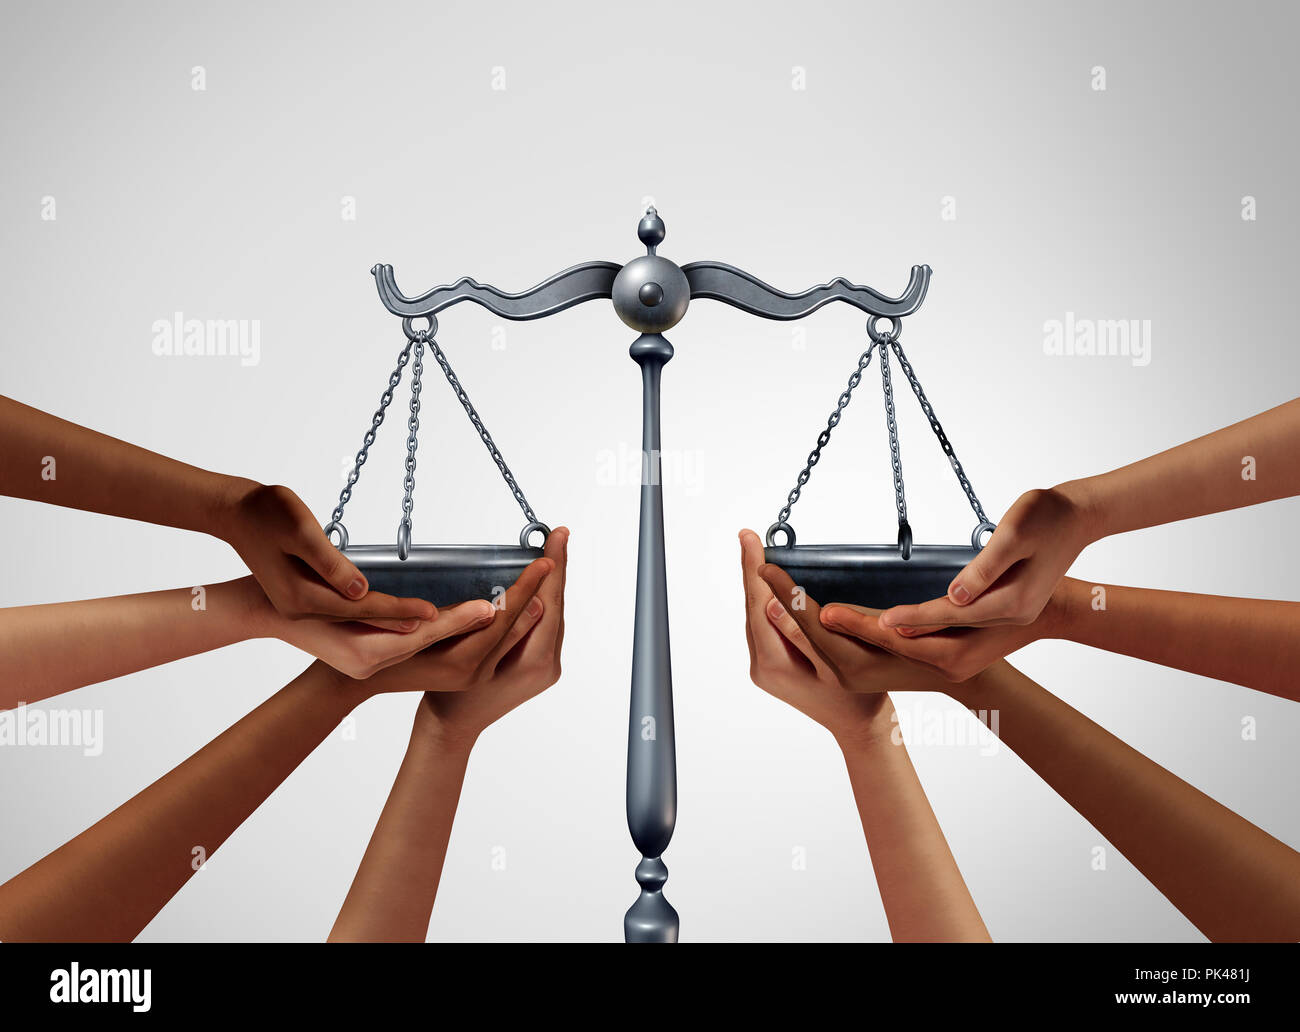 La justice sociale et l'égalité juridique dans la société aussi diverses personnes détenant le solde dans le cadre d'une échelle comme la loi de la population. Banque D'Images